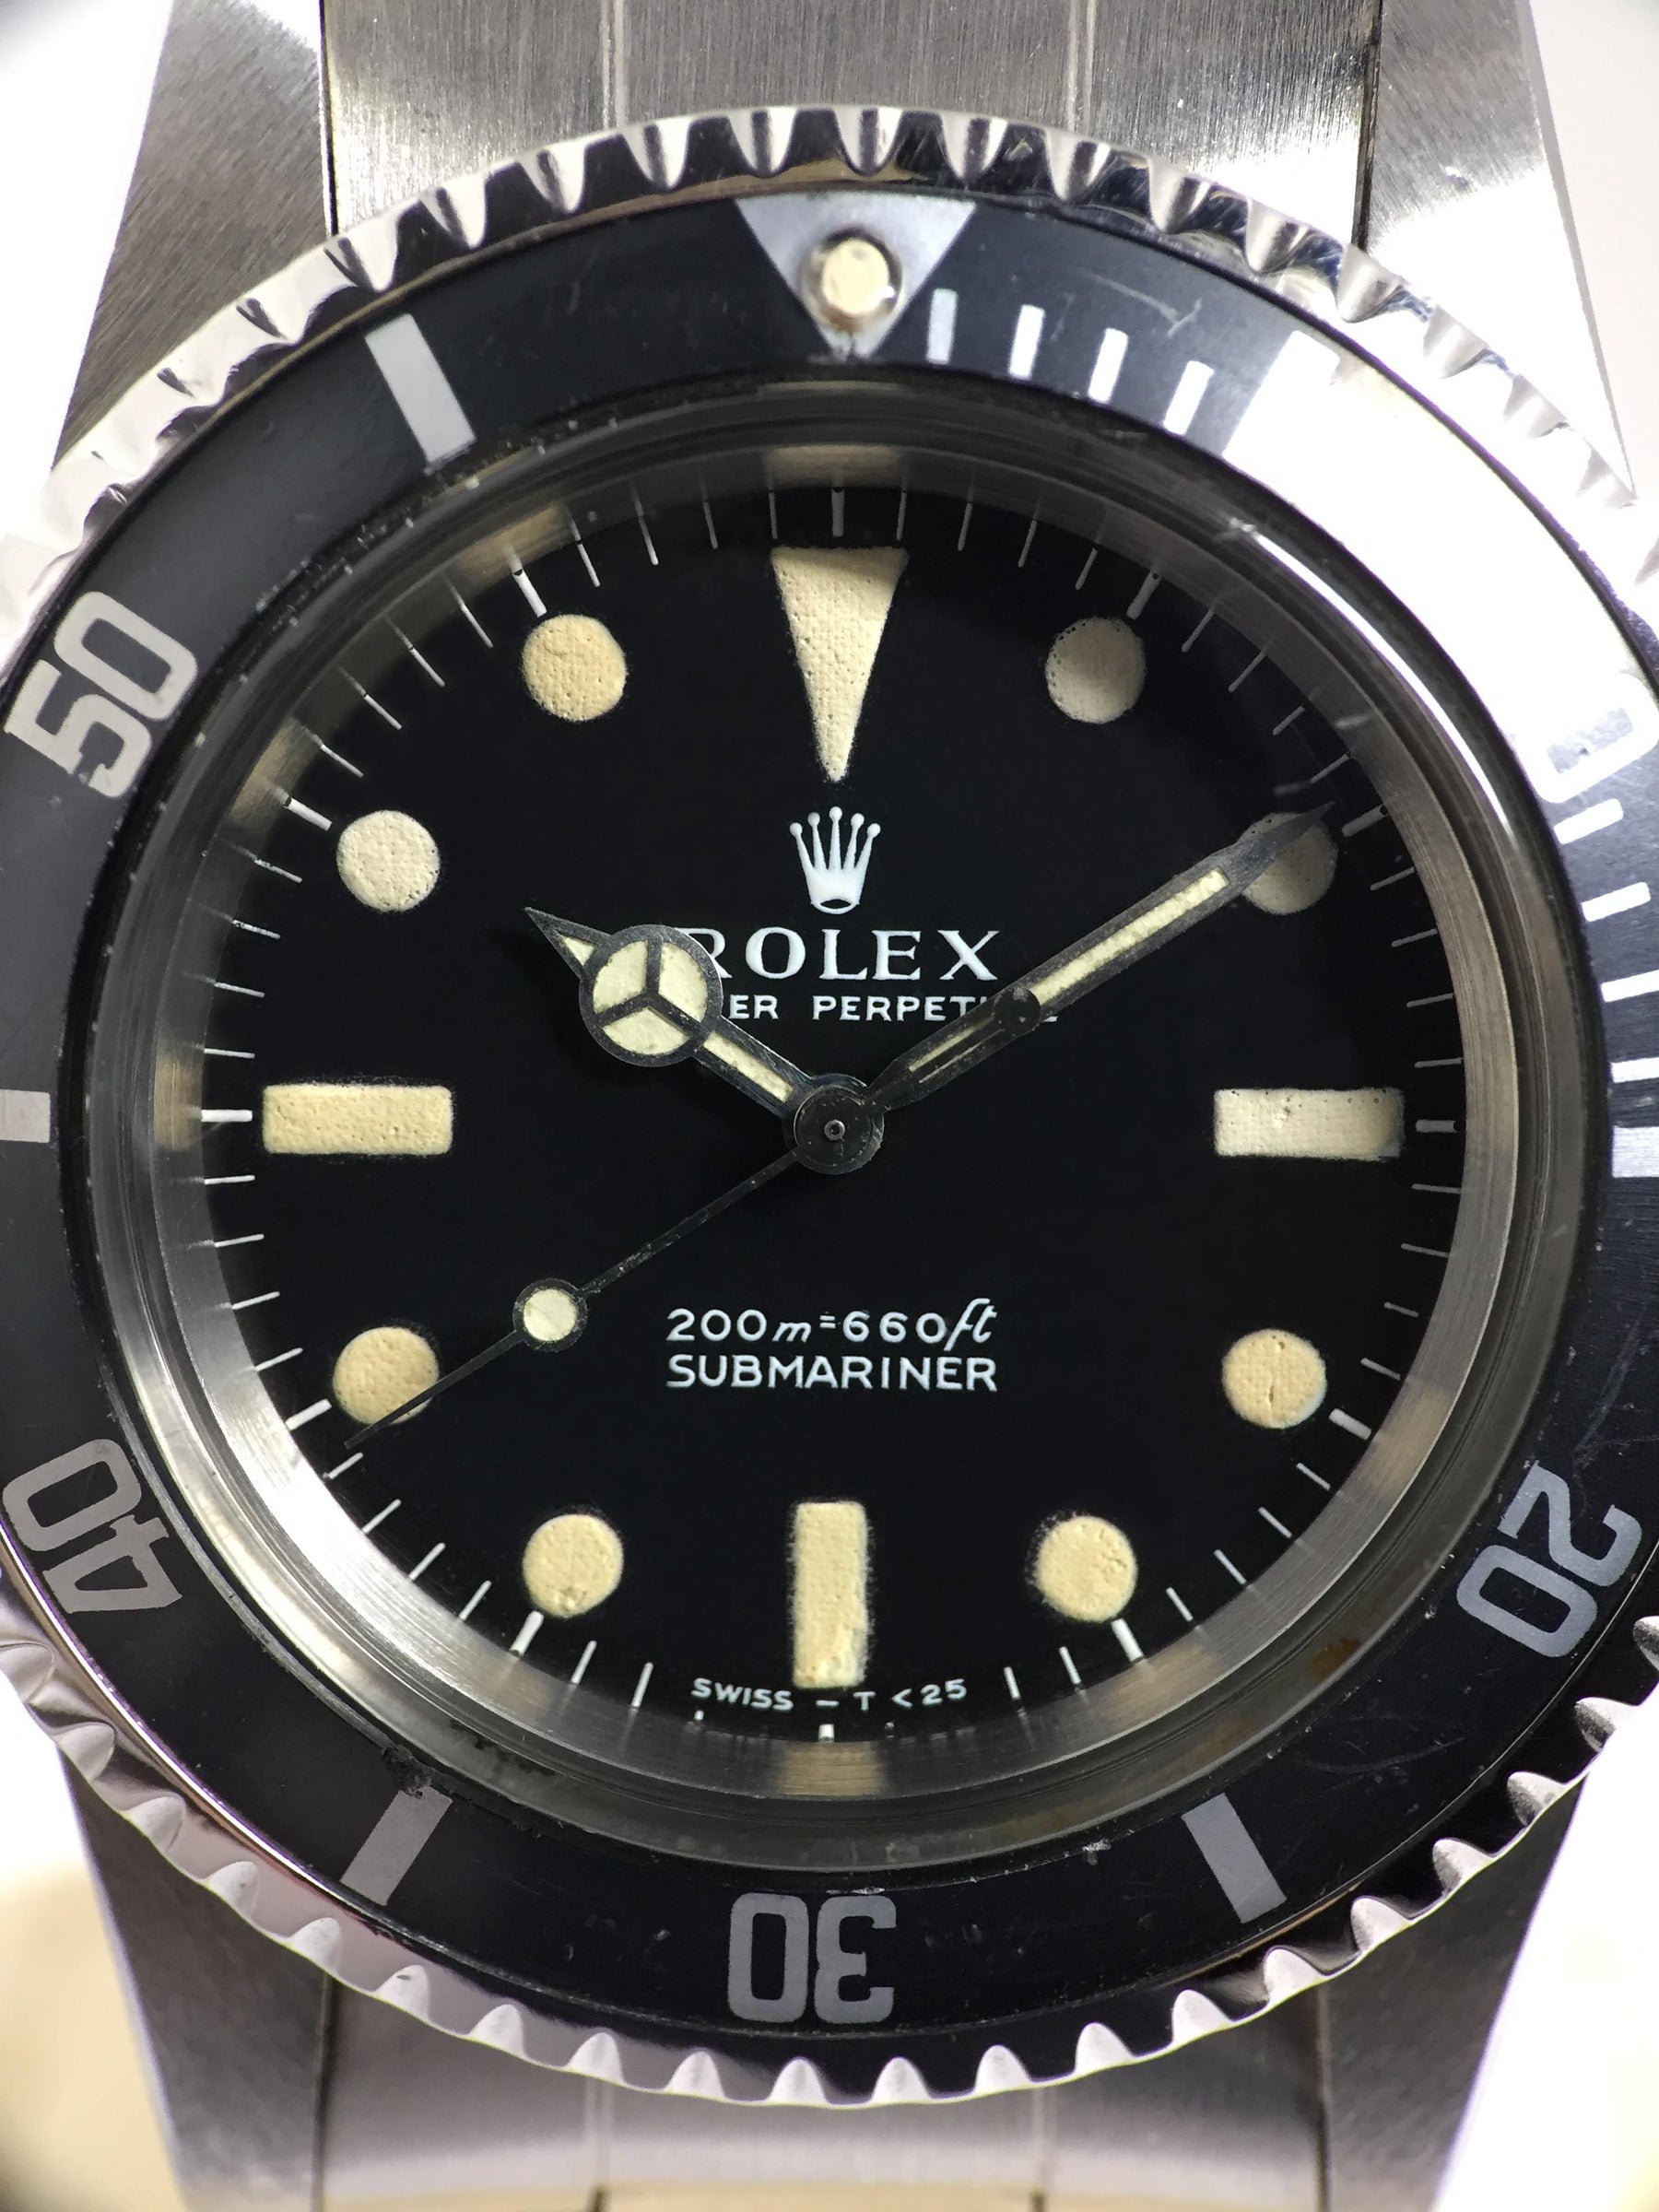 Rolex Submariner Ref. 5513 Year 1969